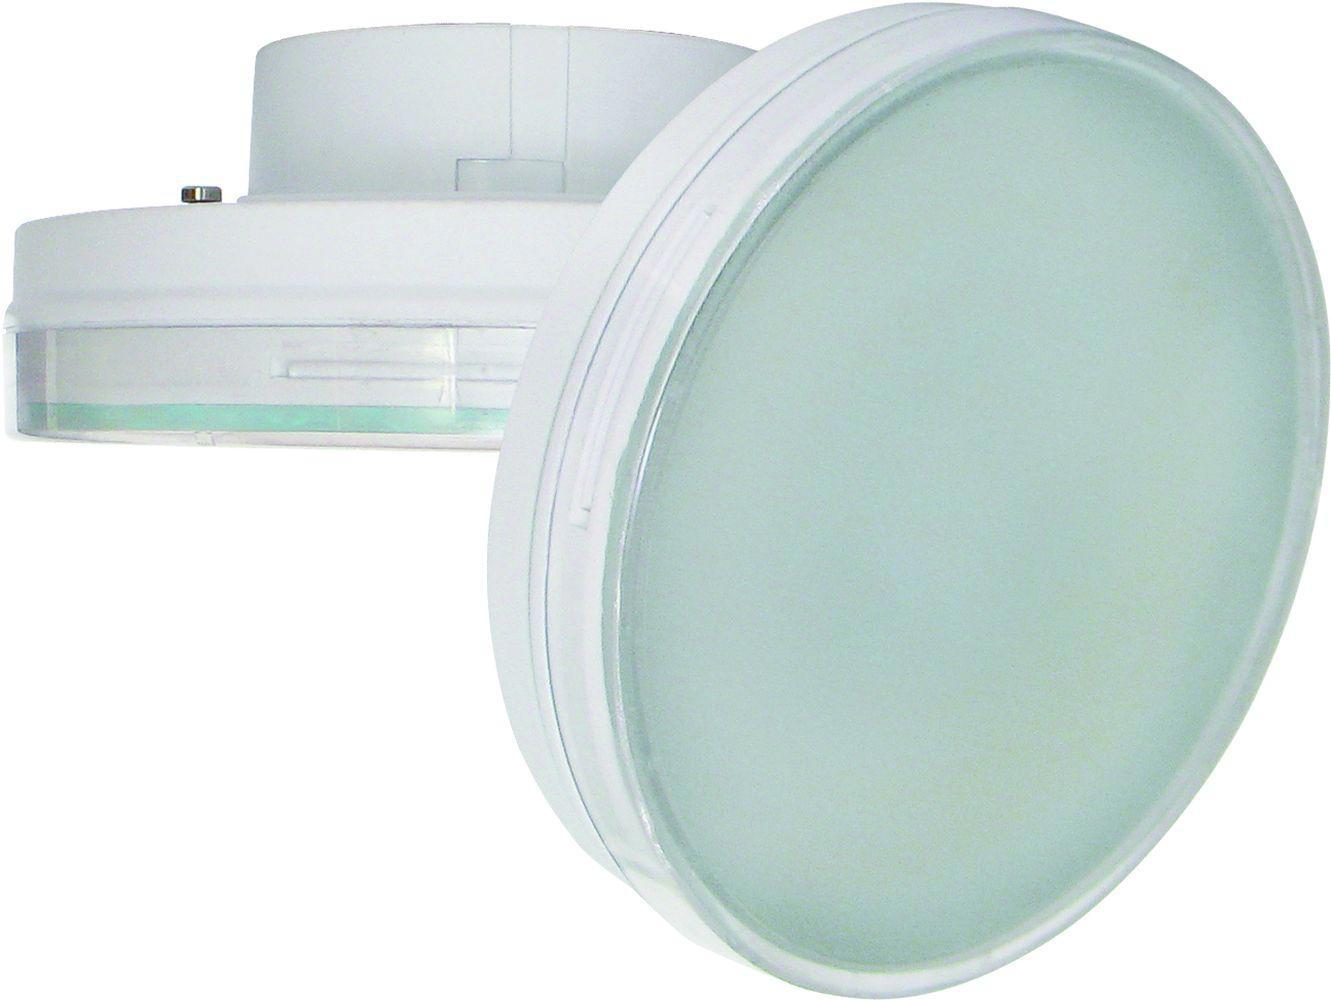 90121572 Лампа светодиодная T7MW10ELC стандарт GX70 220 В 10 Вт диск матовая 800 Лм теплый белый свет STLM-0112569 ECOLA